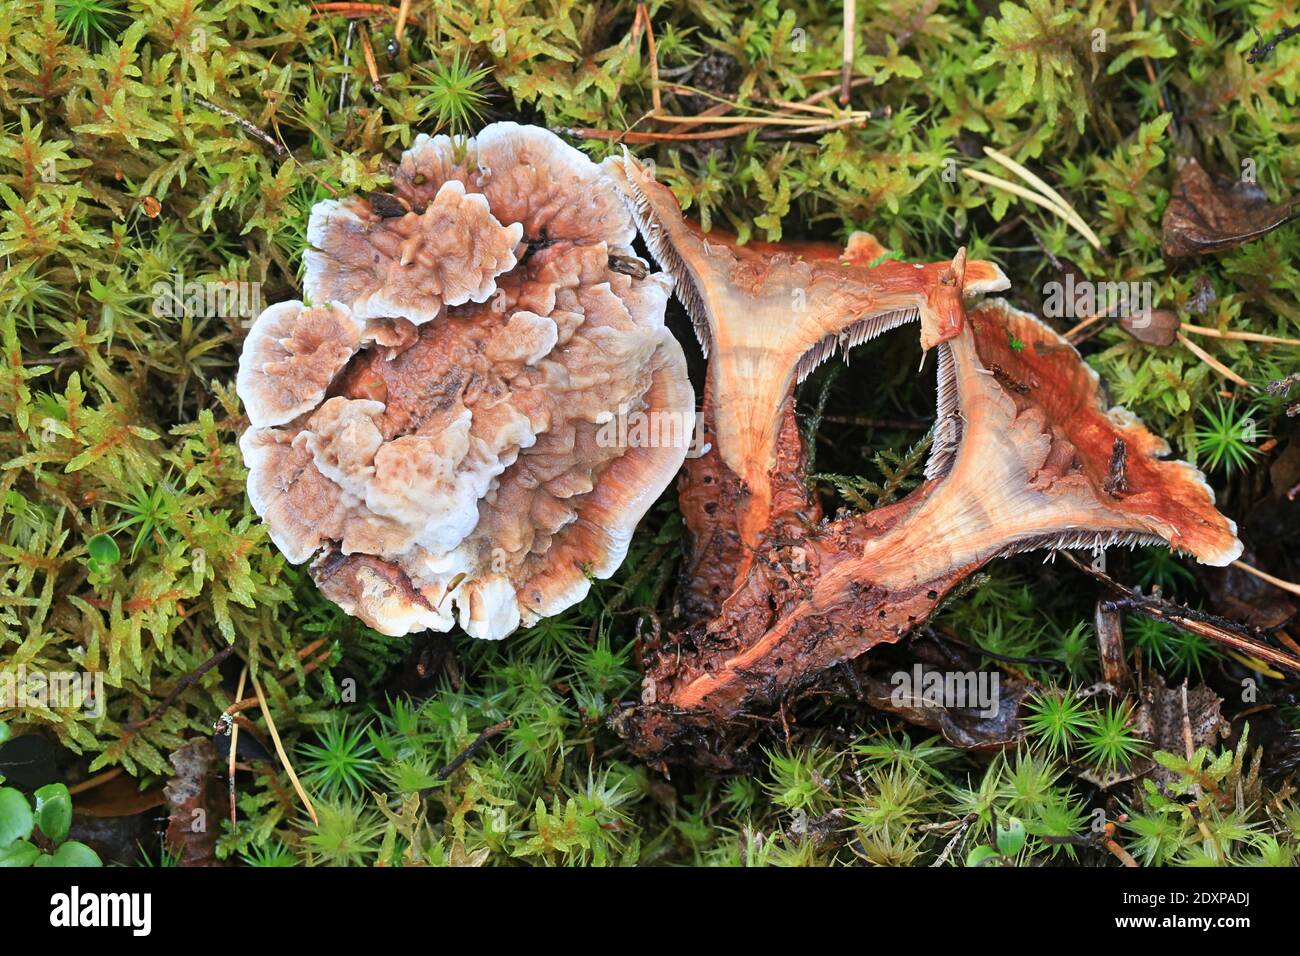 Hydnellum aurantiacum, known as the orange spine or orange Hydnellum, wild tooth fungus from Finland Stock Photo